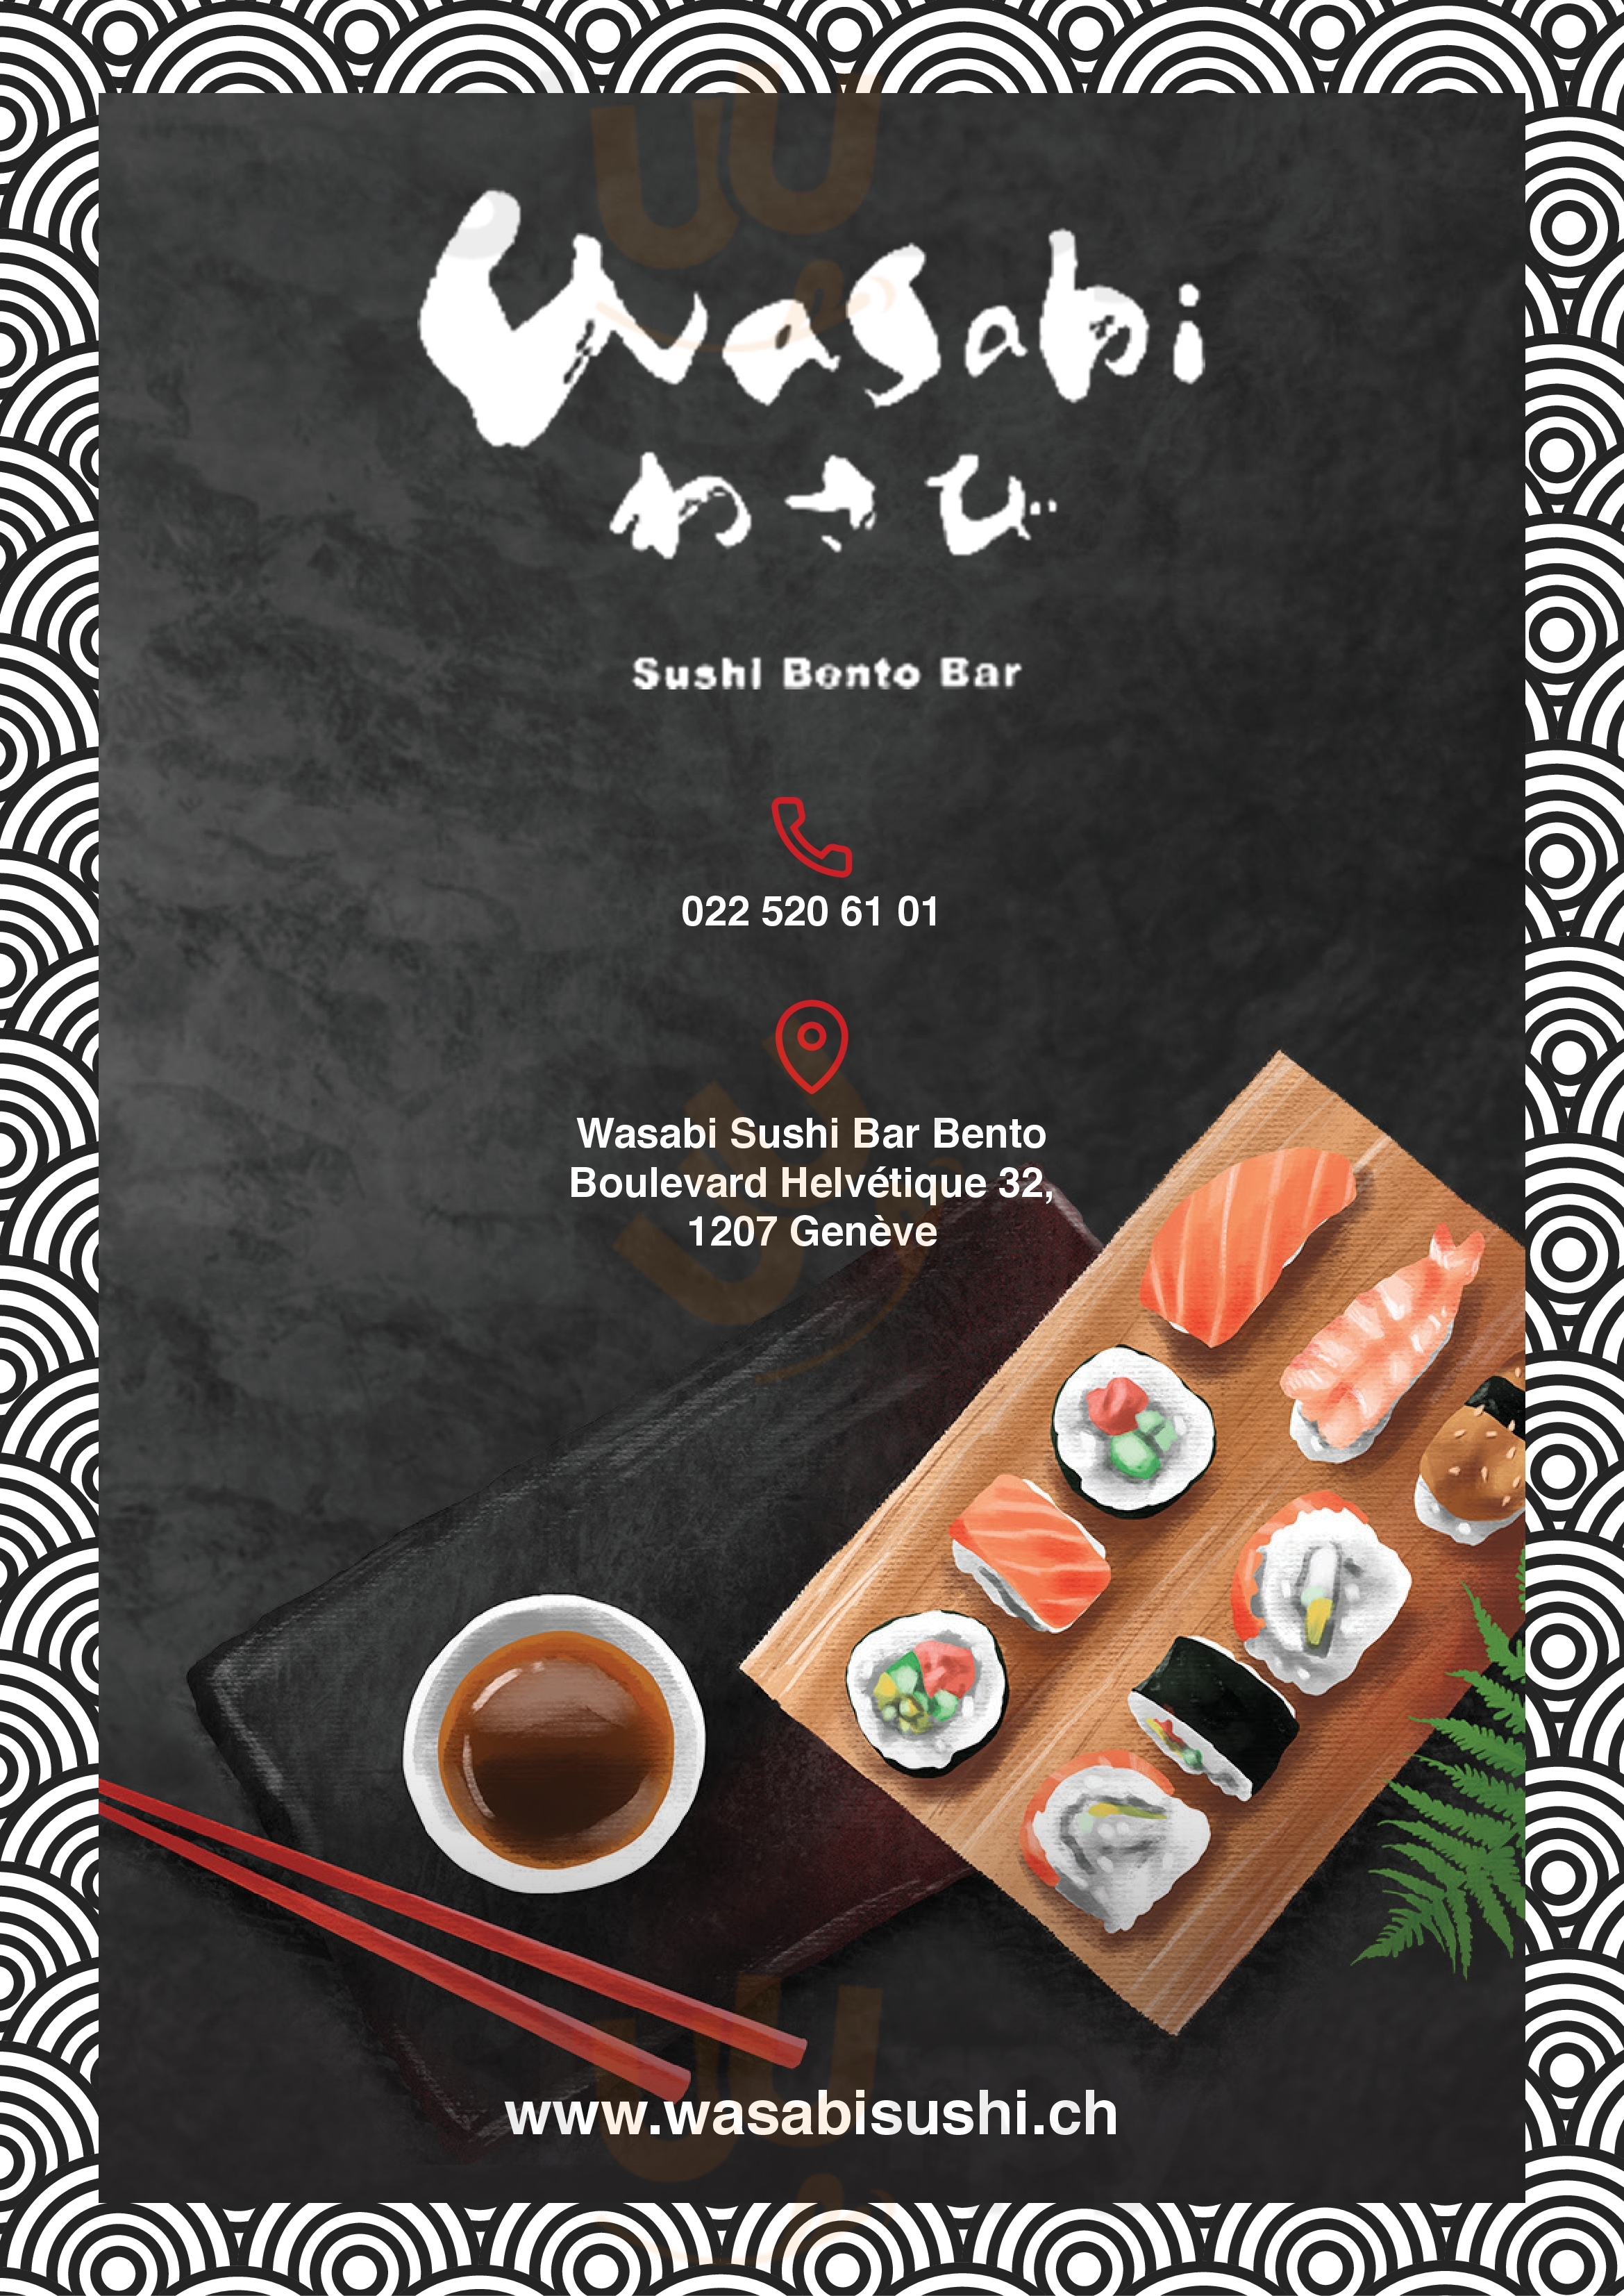 Wasabi Sushi Bento Bar Genf Menu - 1